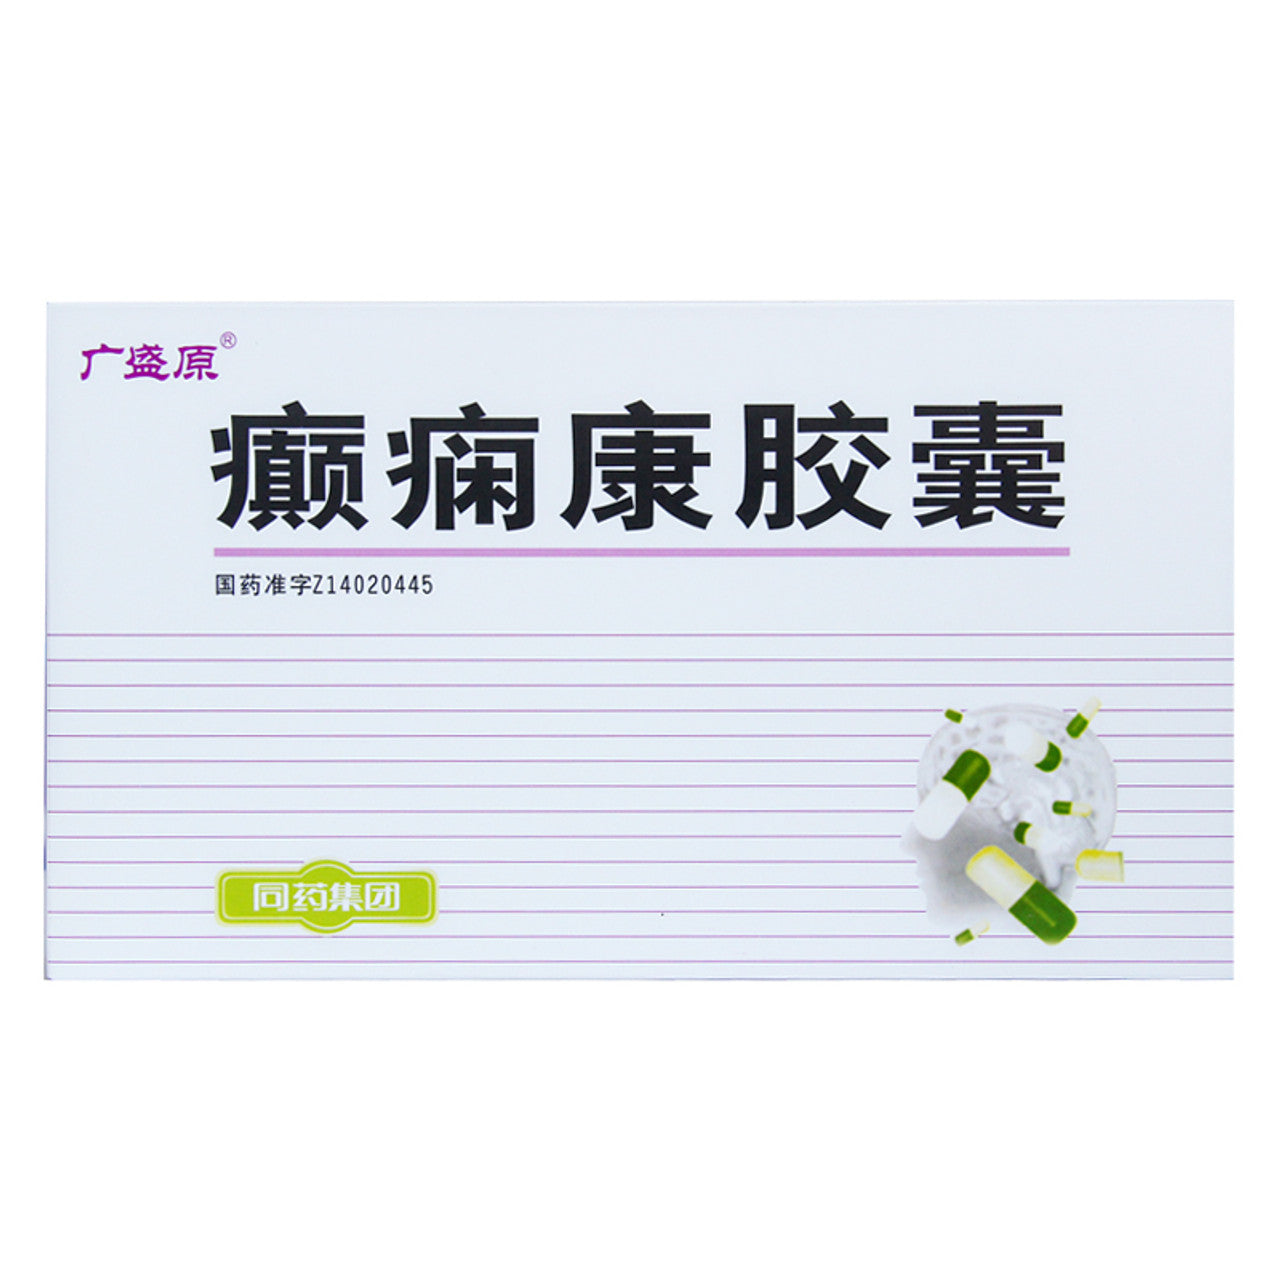 China Herb. Brand Guang Sheng Yuan. Dianxiankang Jiaonang or Dian Xian Kang Jiao Nang or Dianxiankang Capsules or Dian Xian Kang Capsules for Epilepsy. (60 Capsules*5 boxes)